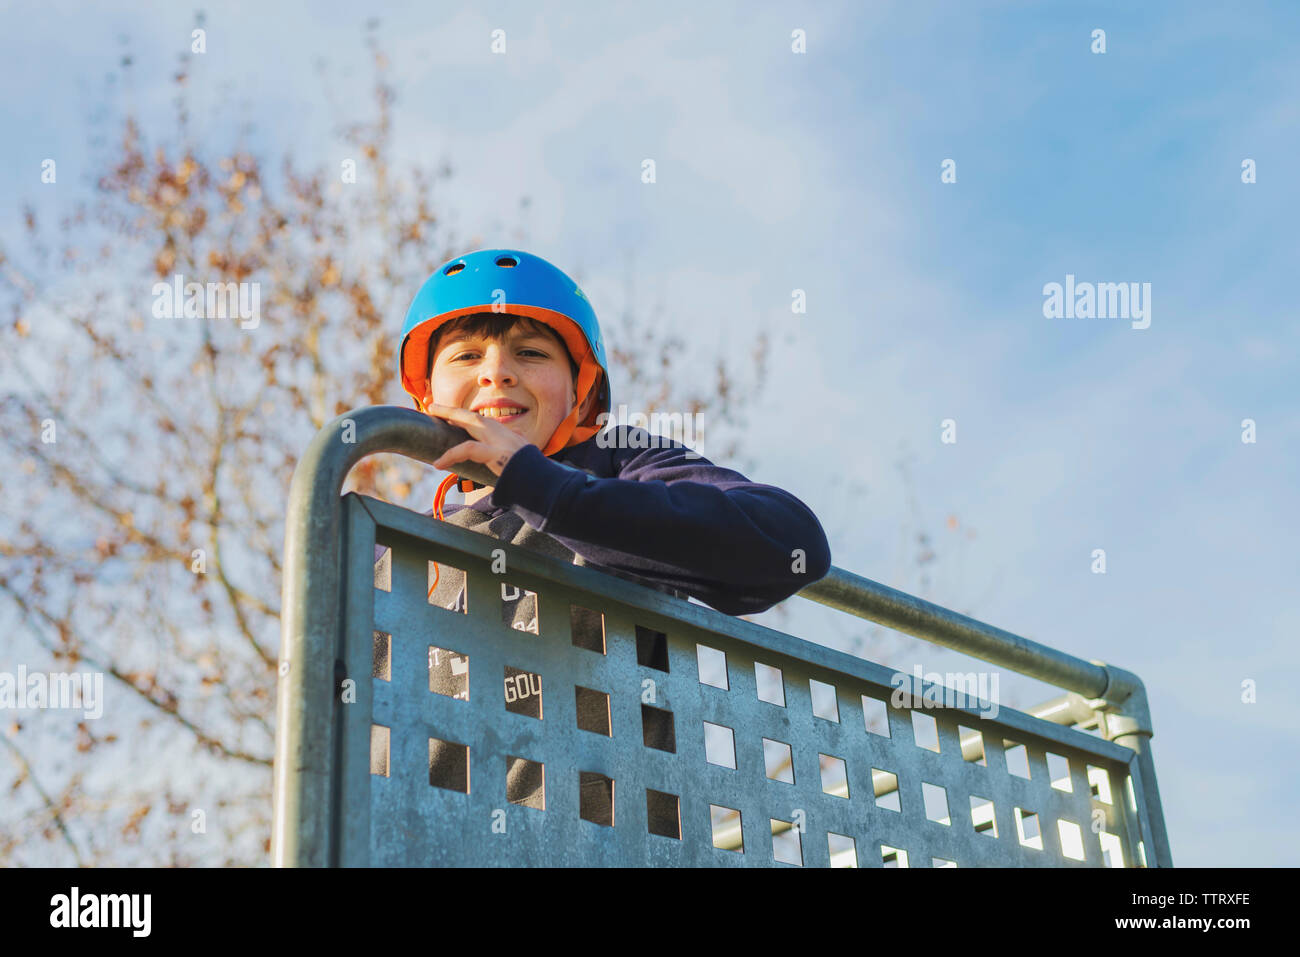 Porträt eines Jungen mit blauen Helm, suchen Kamera im sonnigen Tag Stockfoto